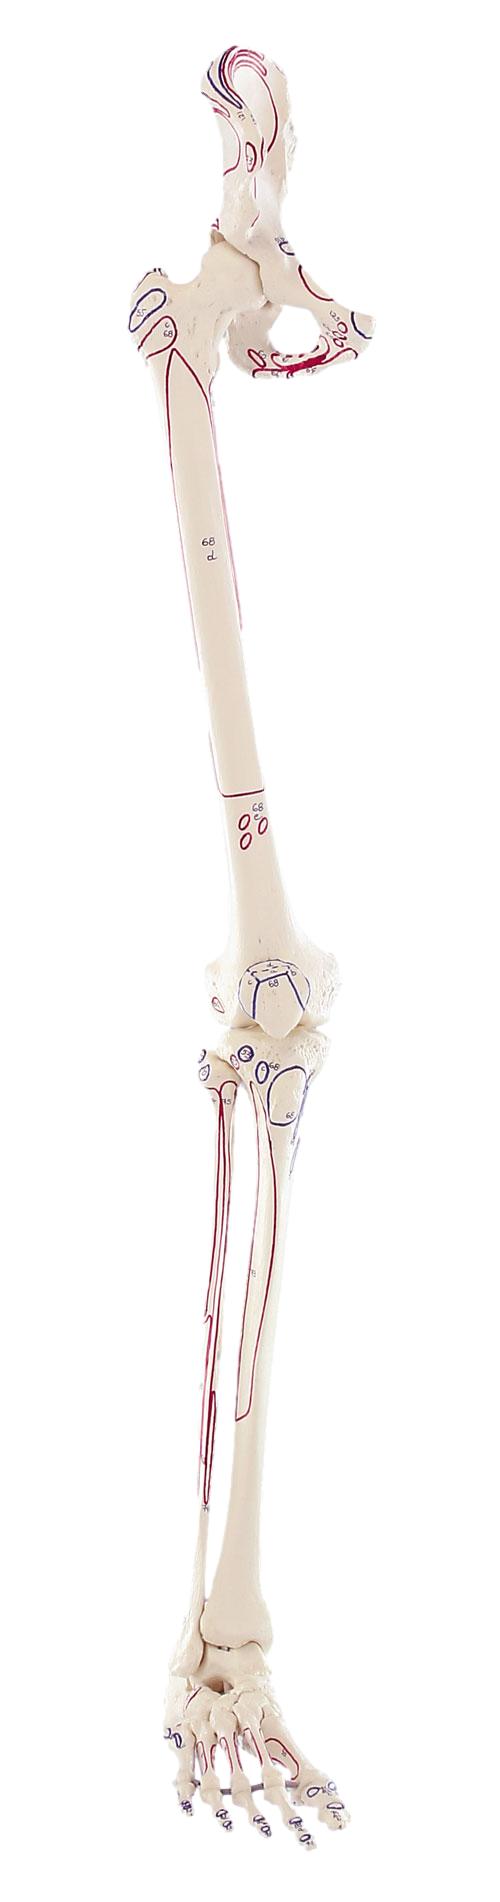 Squelette de la jambe avec moitié du bassin + Muscles dessinés